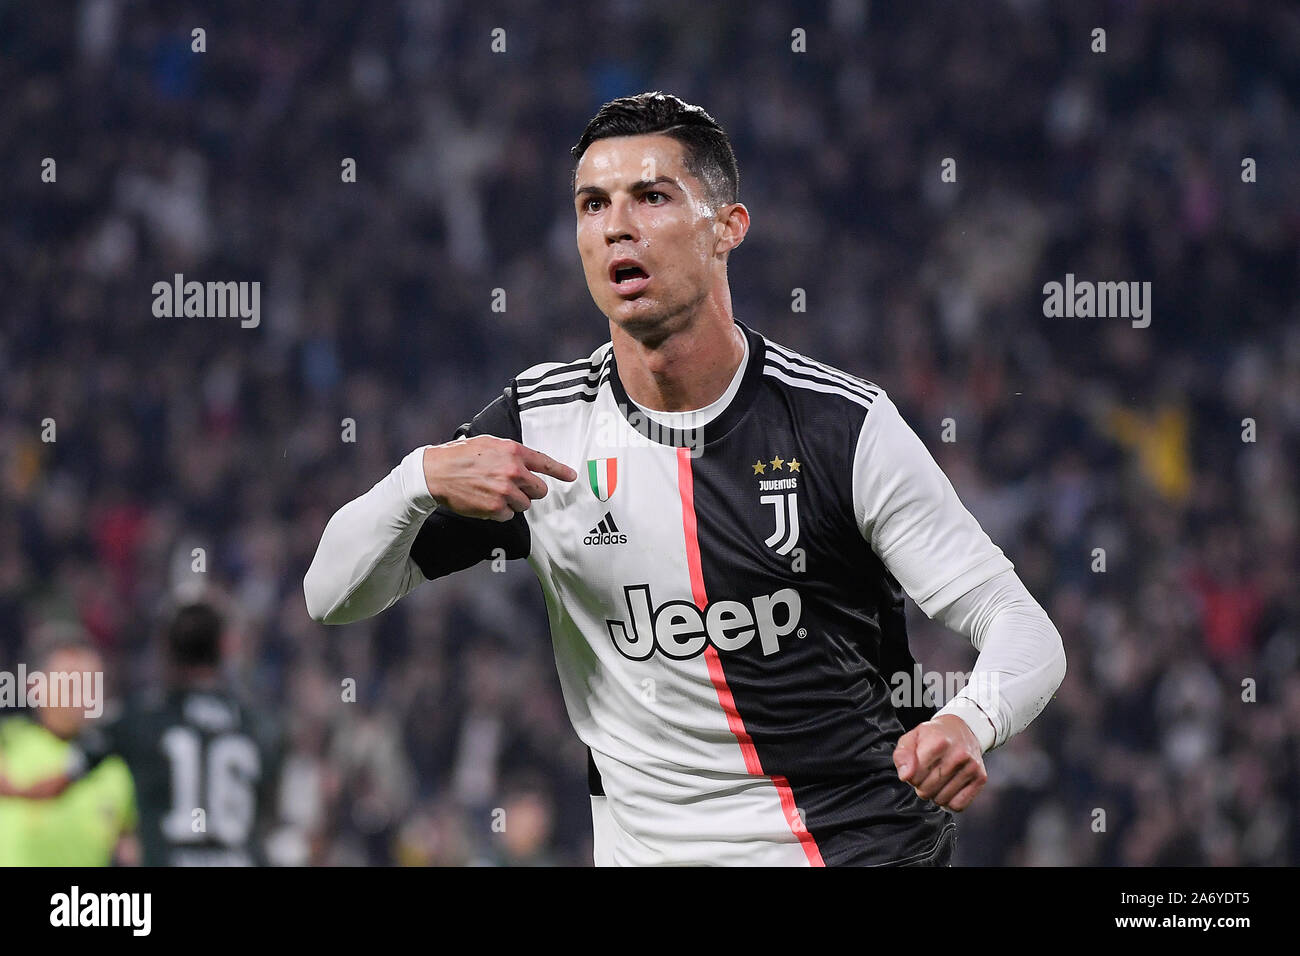 Juventus jugador Cristiano Ronaldo durante la Juventus - Bolonia, partido de fútbol en el estadio Allianz en Turín Foto de stock